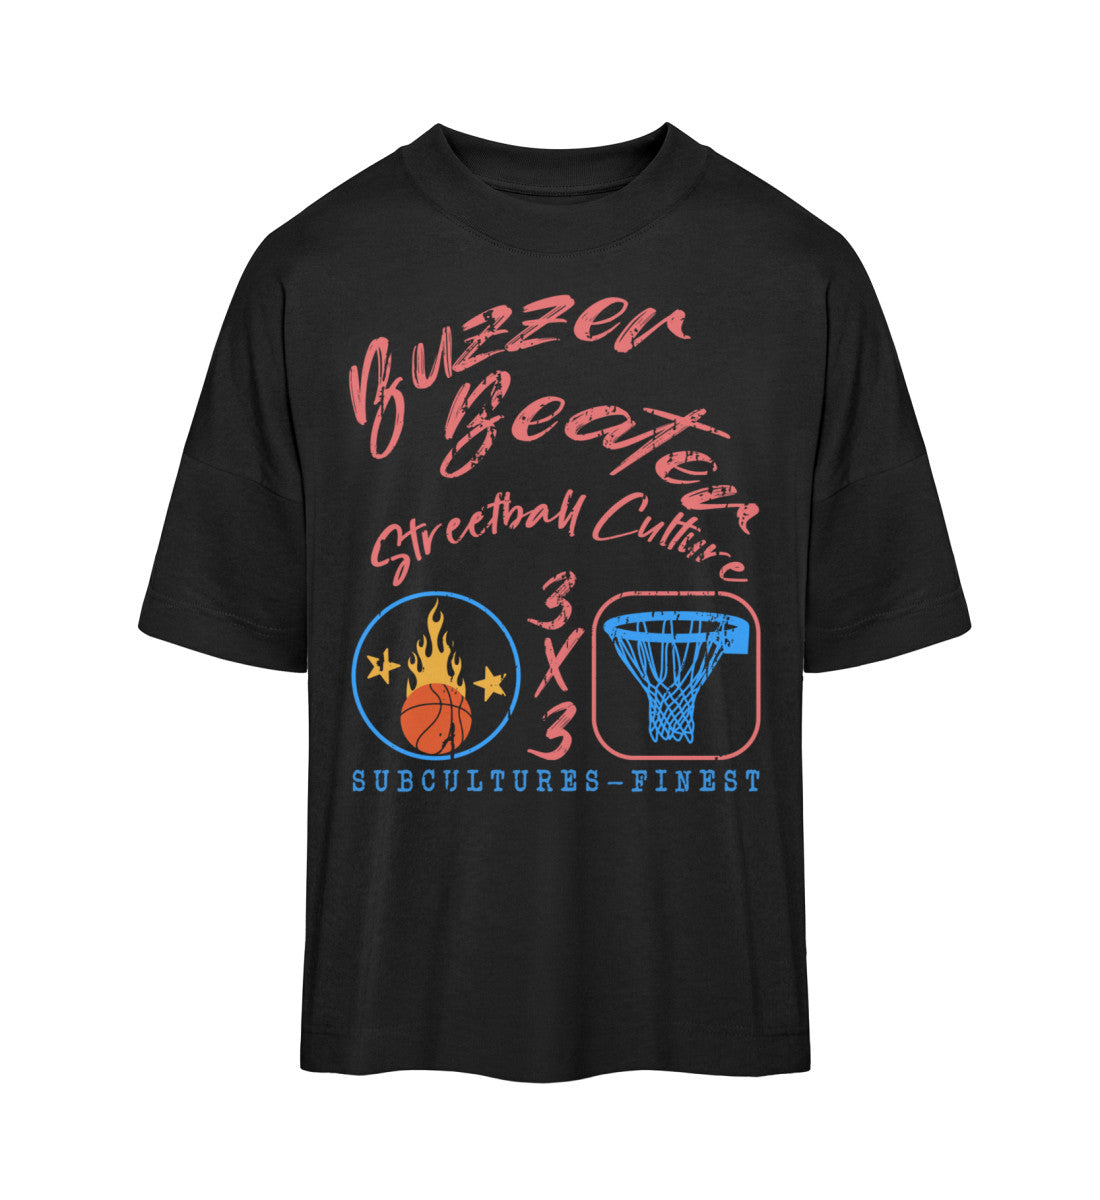 Schwarzes T-Shirt Unisex Oversize Fit für Frauen und Männer bedruckt mit dem Design der Roger Rockawoo Kollektion Basketball 3x3 Streetball